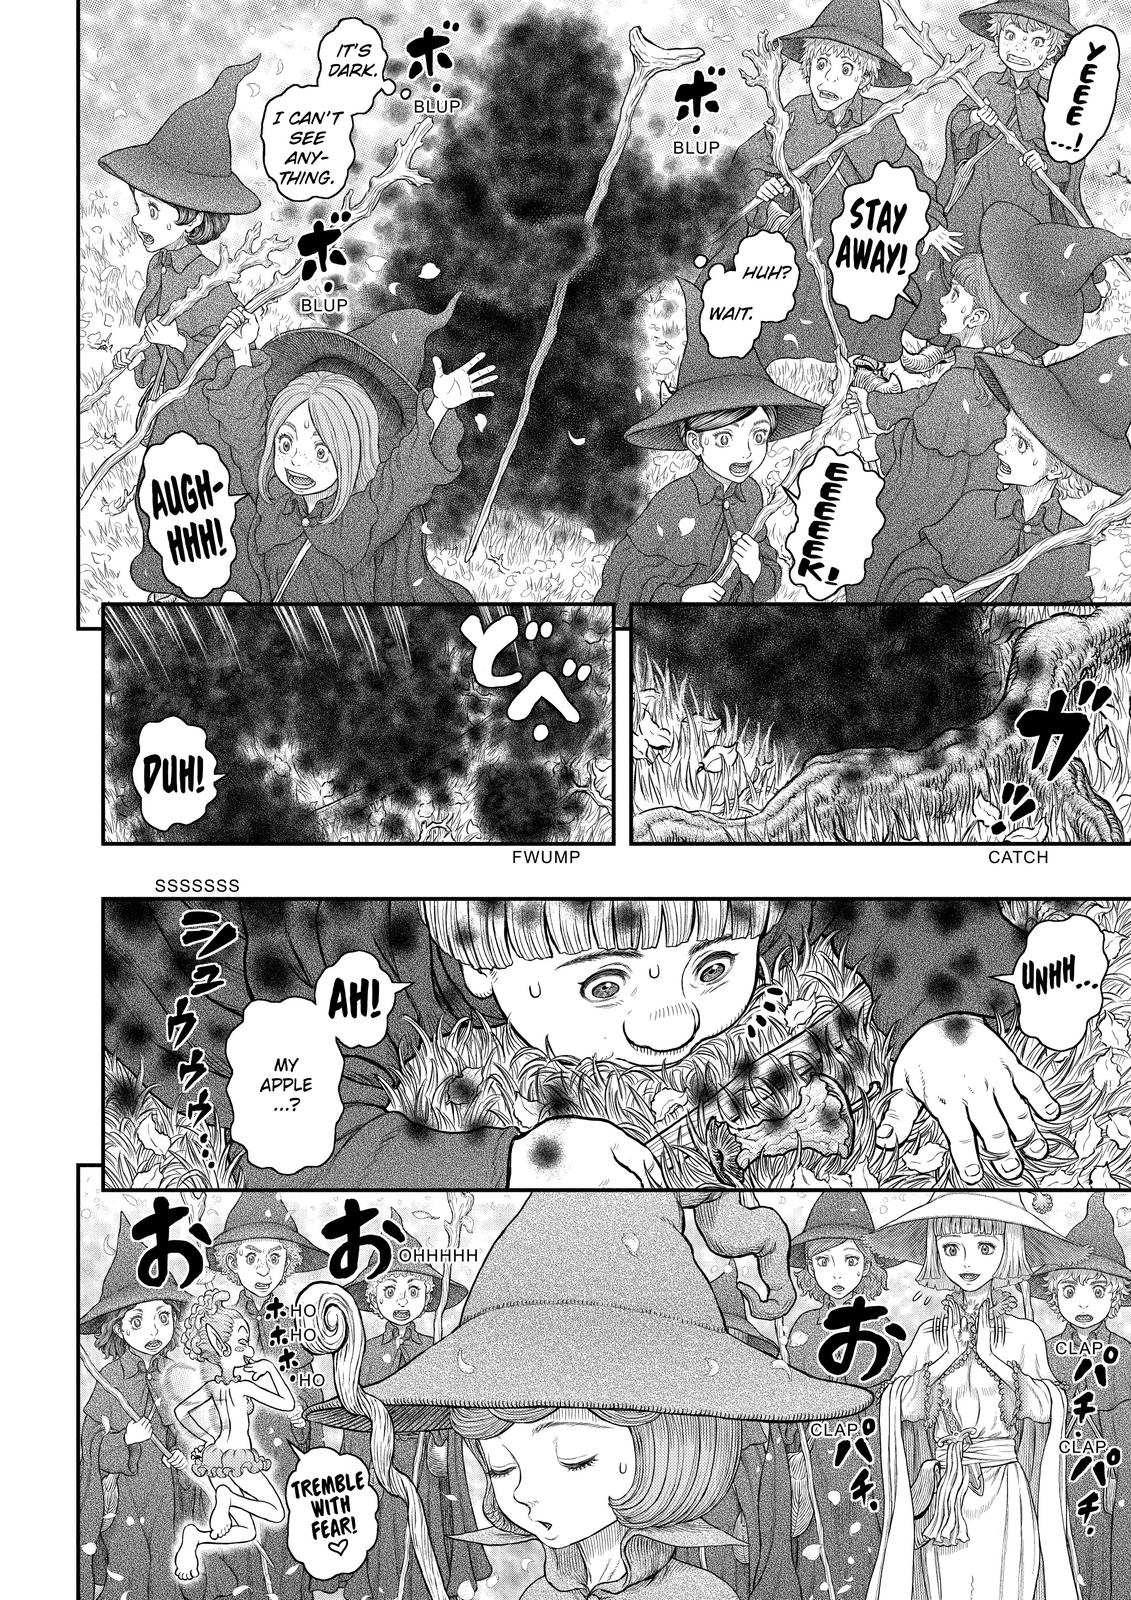 Berserk Manga Chapter 360 image 12